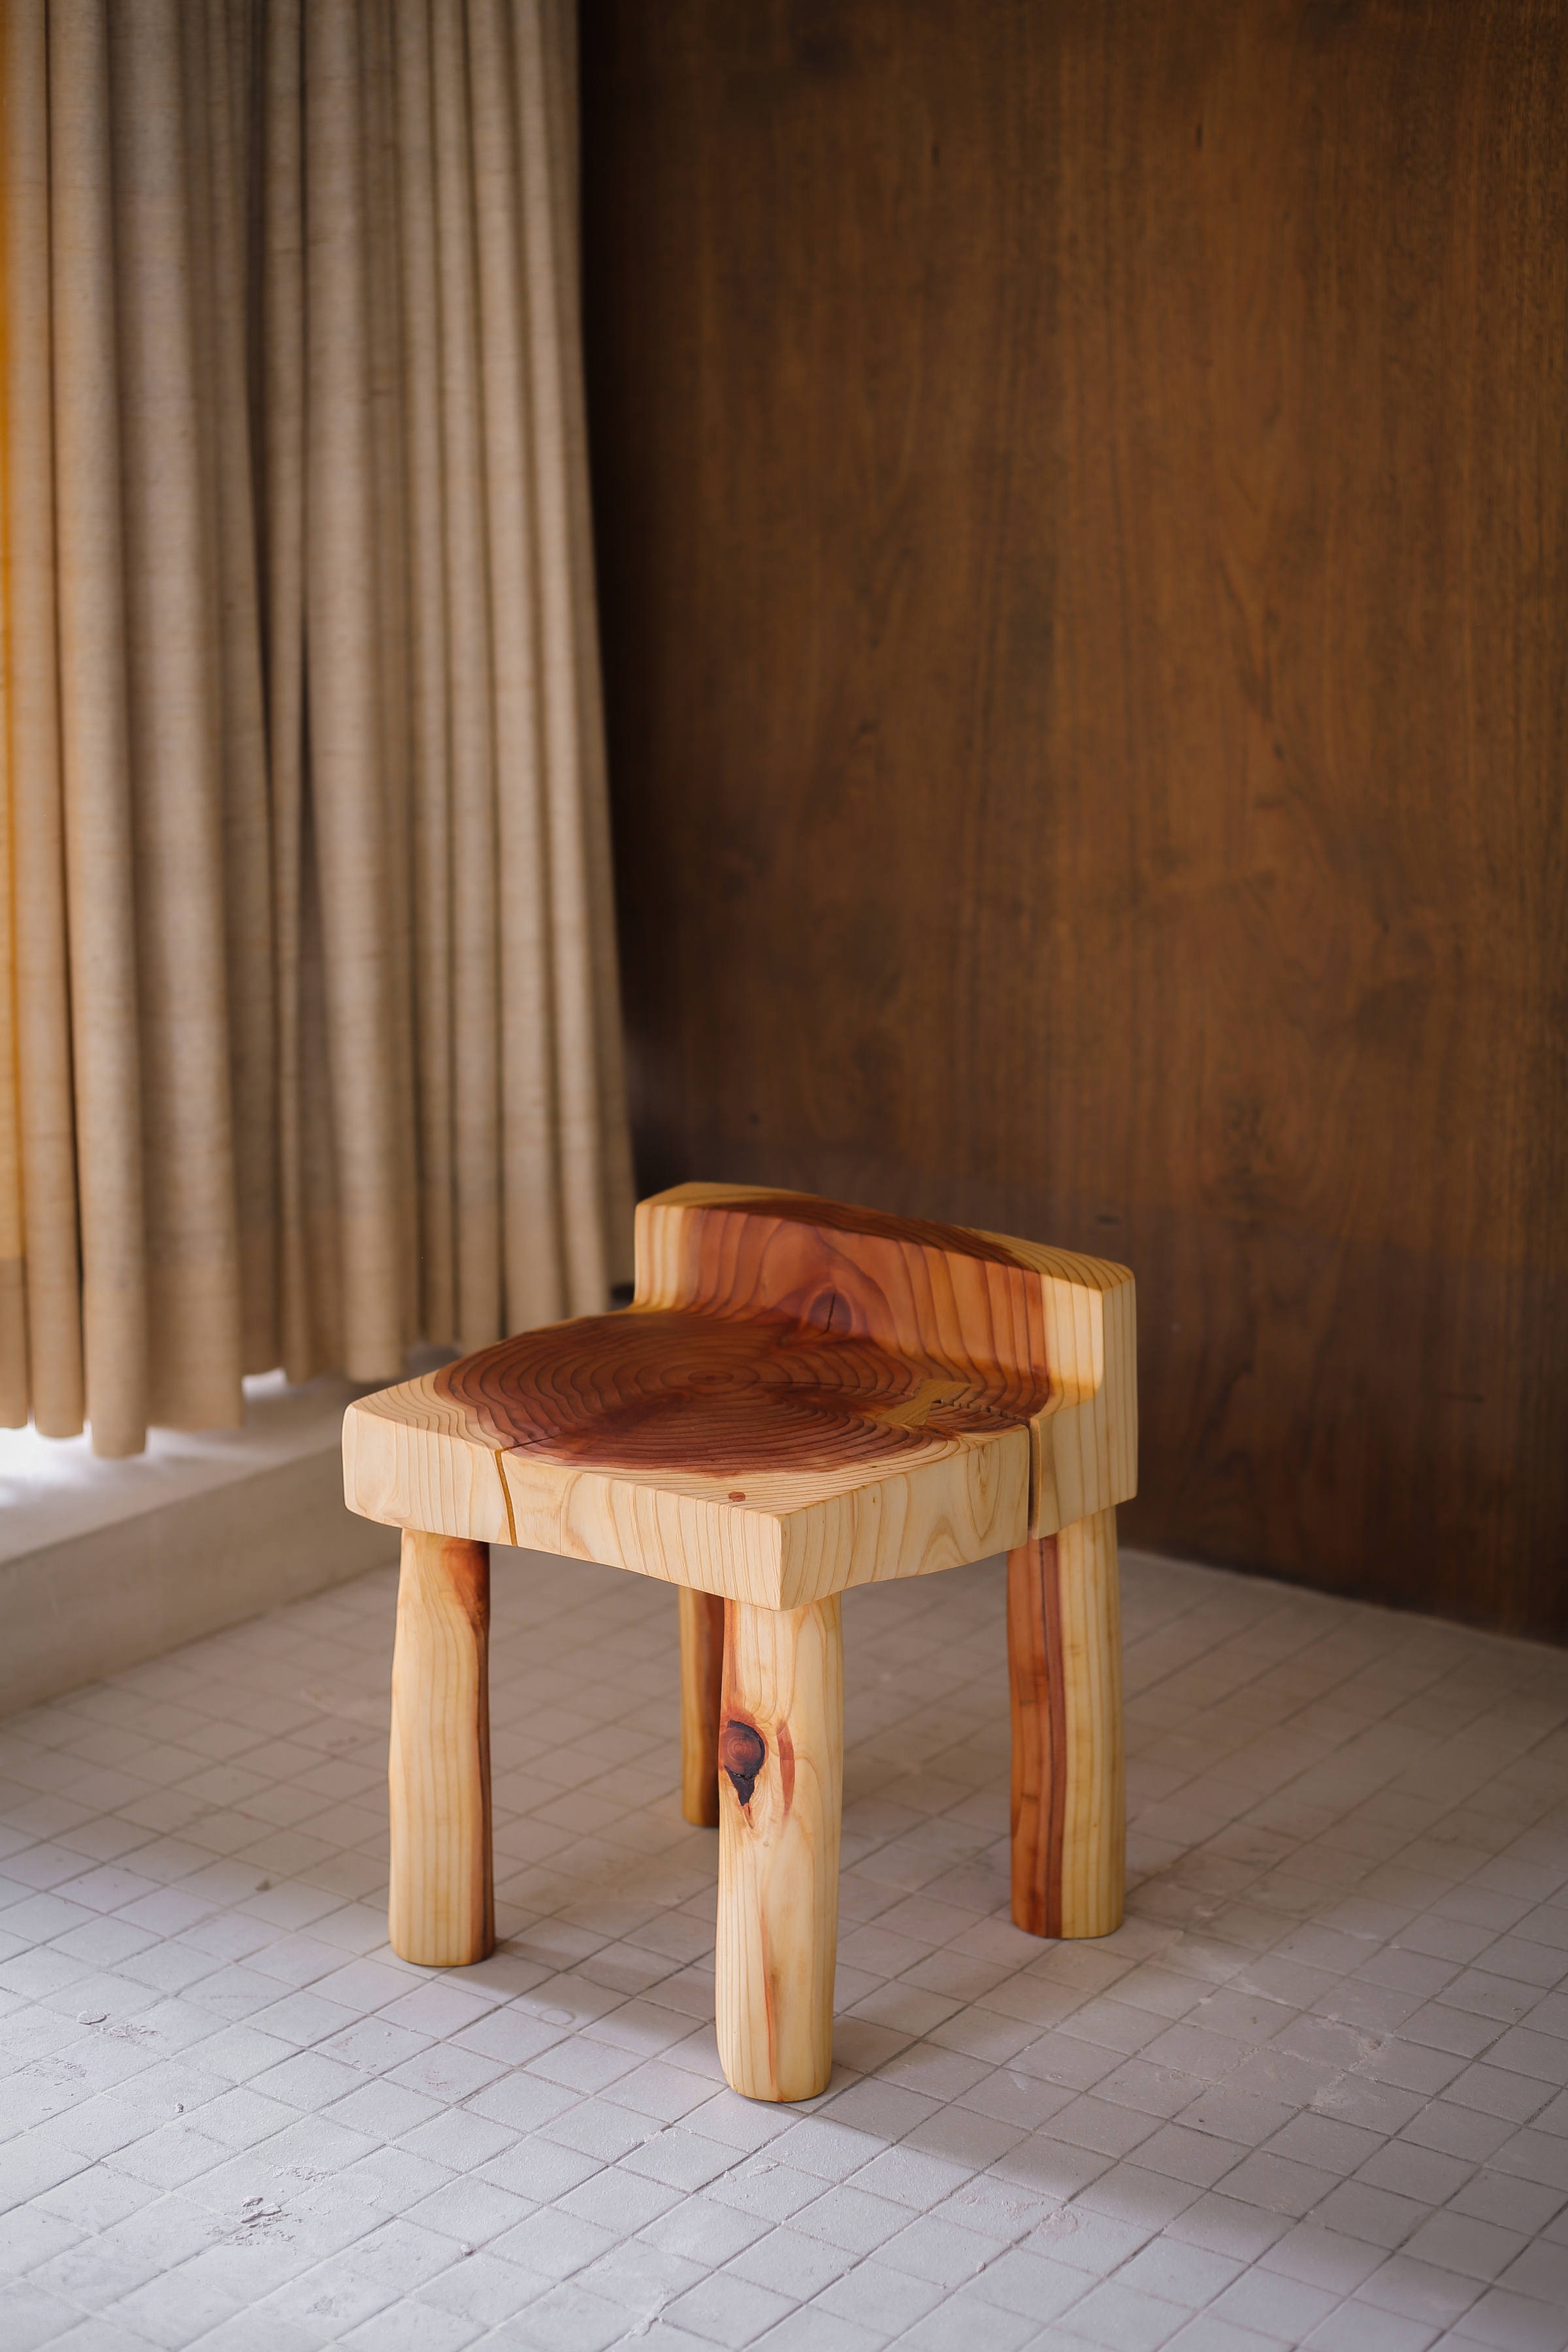 Aurora Chair, 2021
wood (sequoia)
15 3/4h x 12 1/2w x 12 1/2d in
40.01h x 31.75w x 31.75d cm
VS_2021_0025
&amp;nbsp;